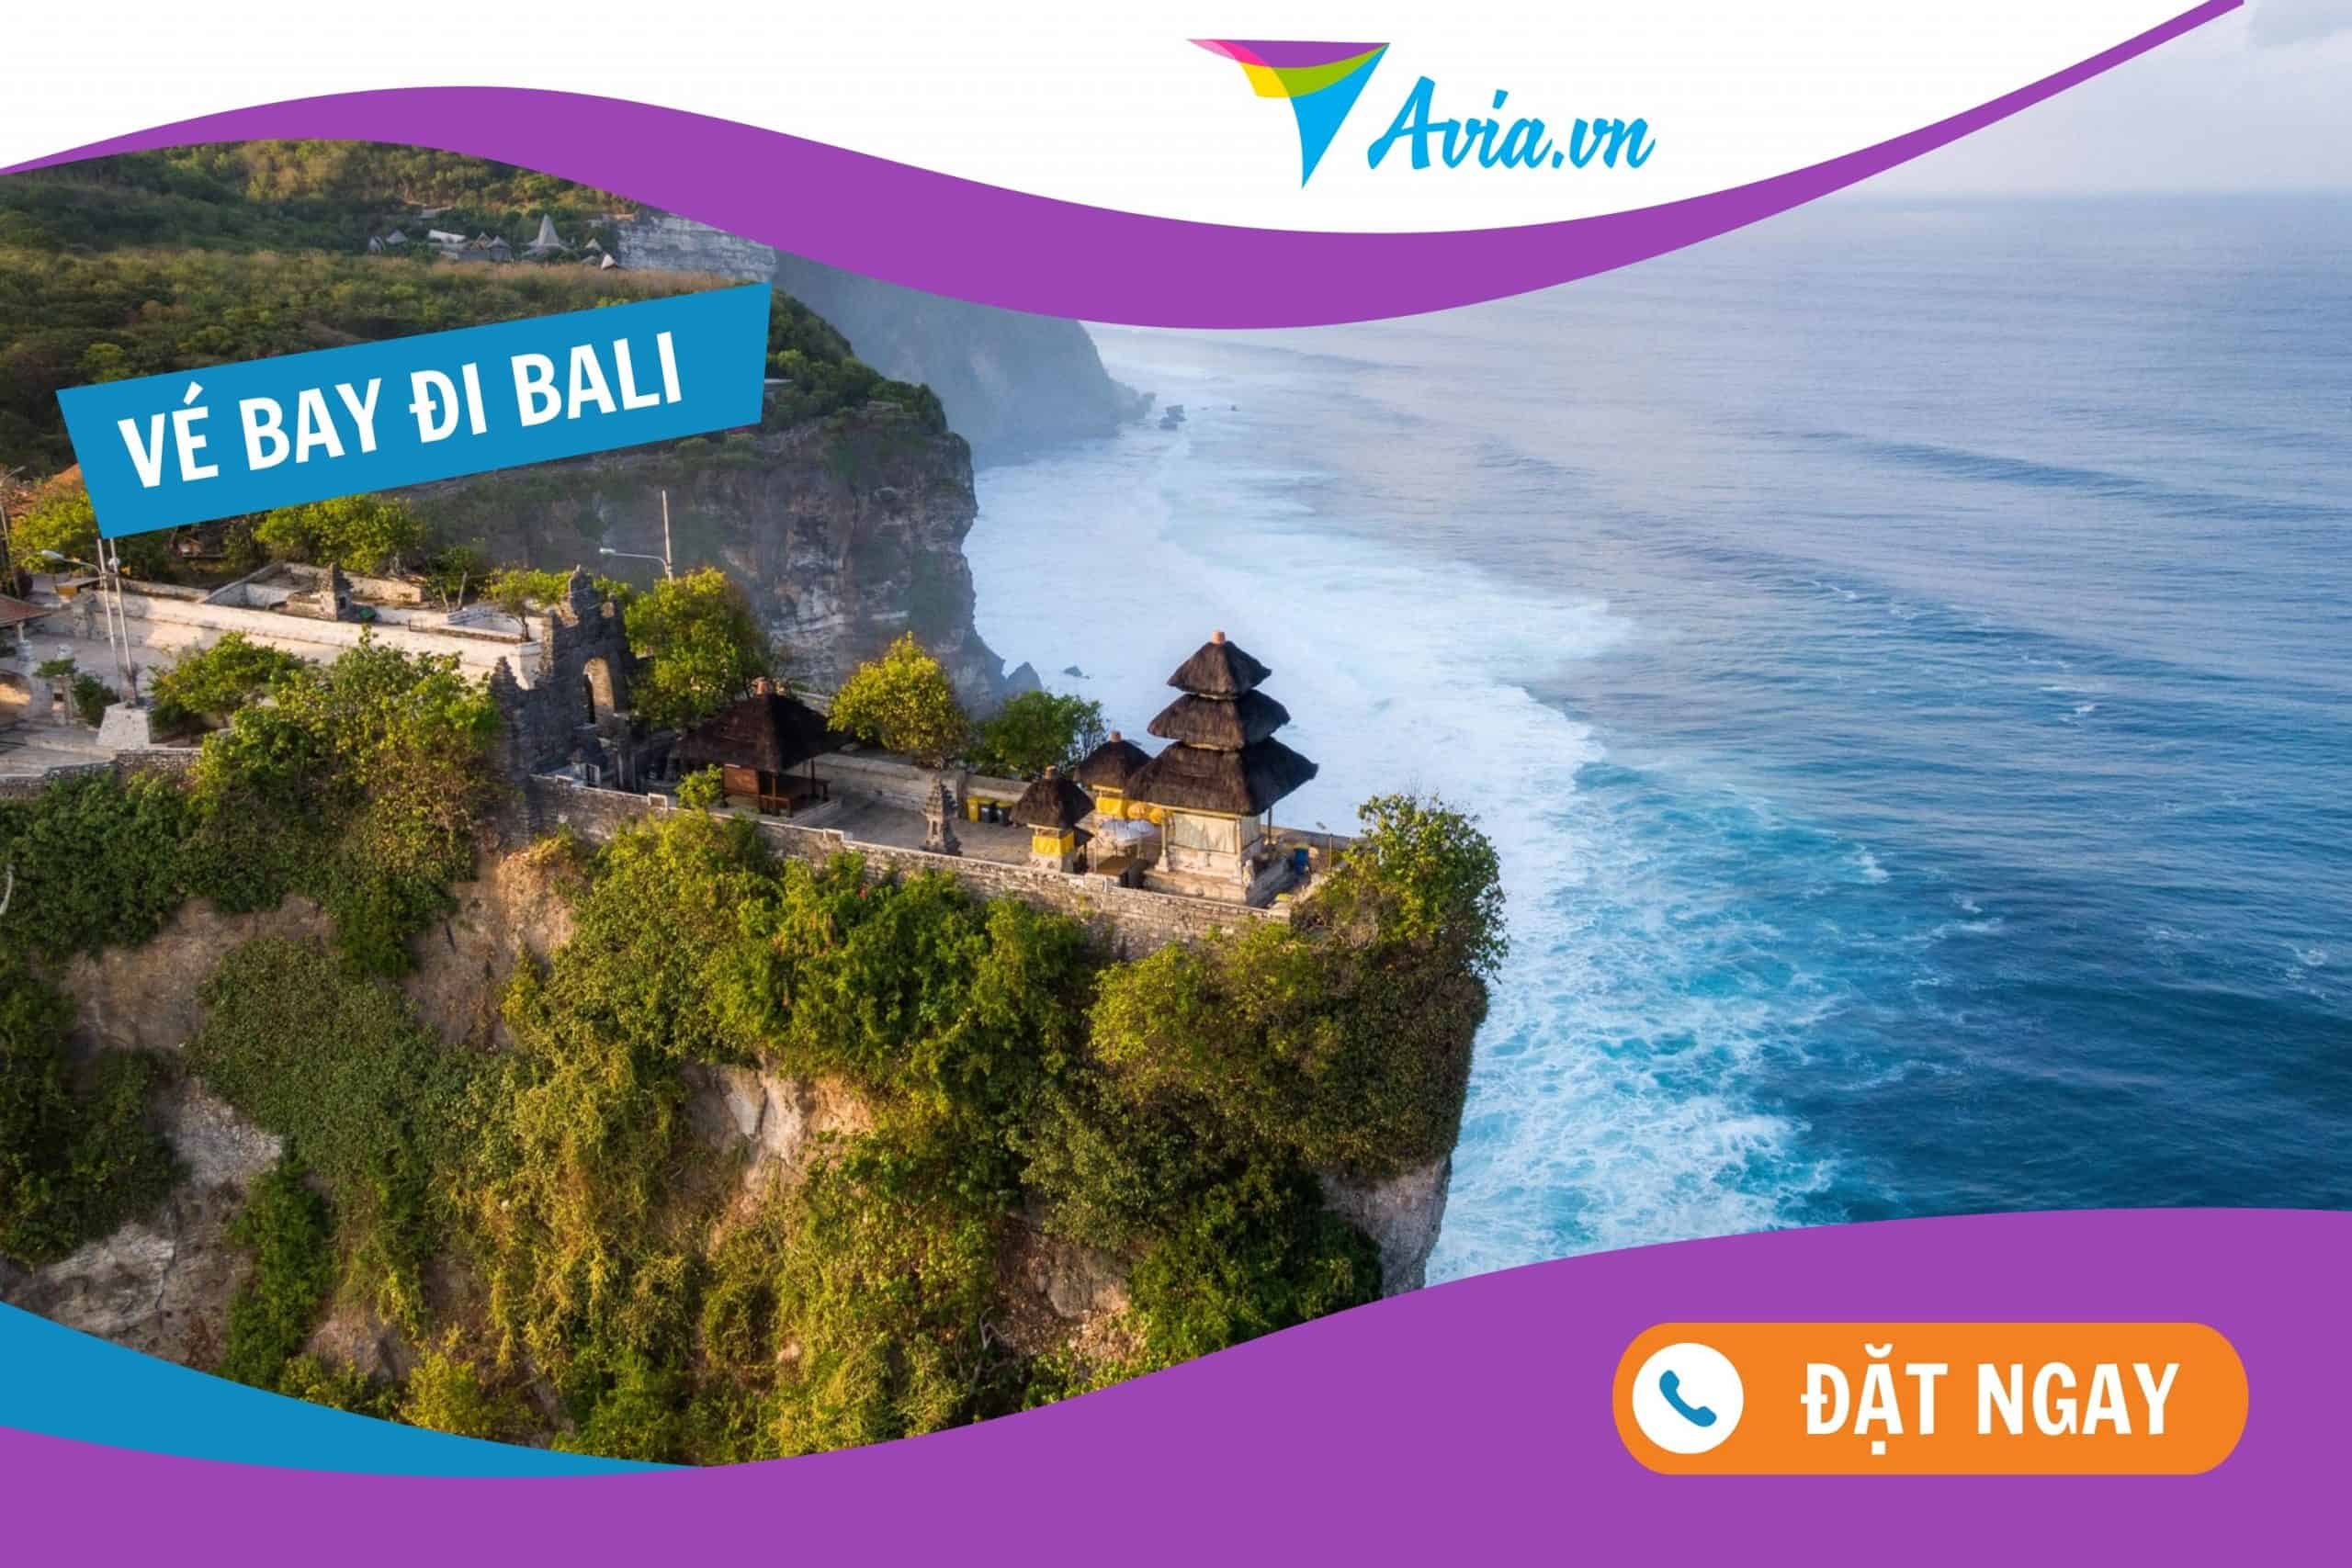 Vé máy bay đi Bali